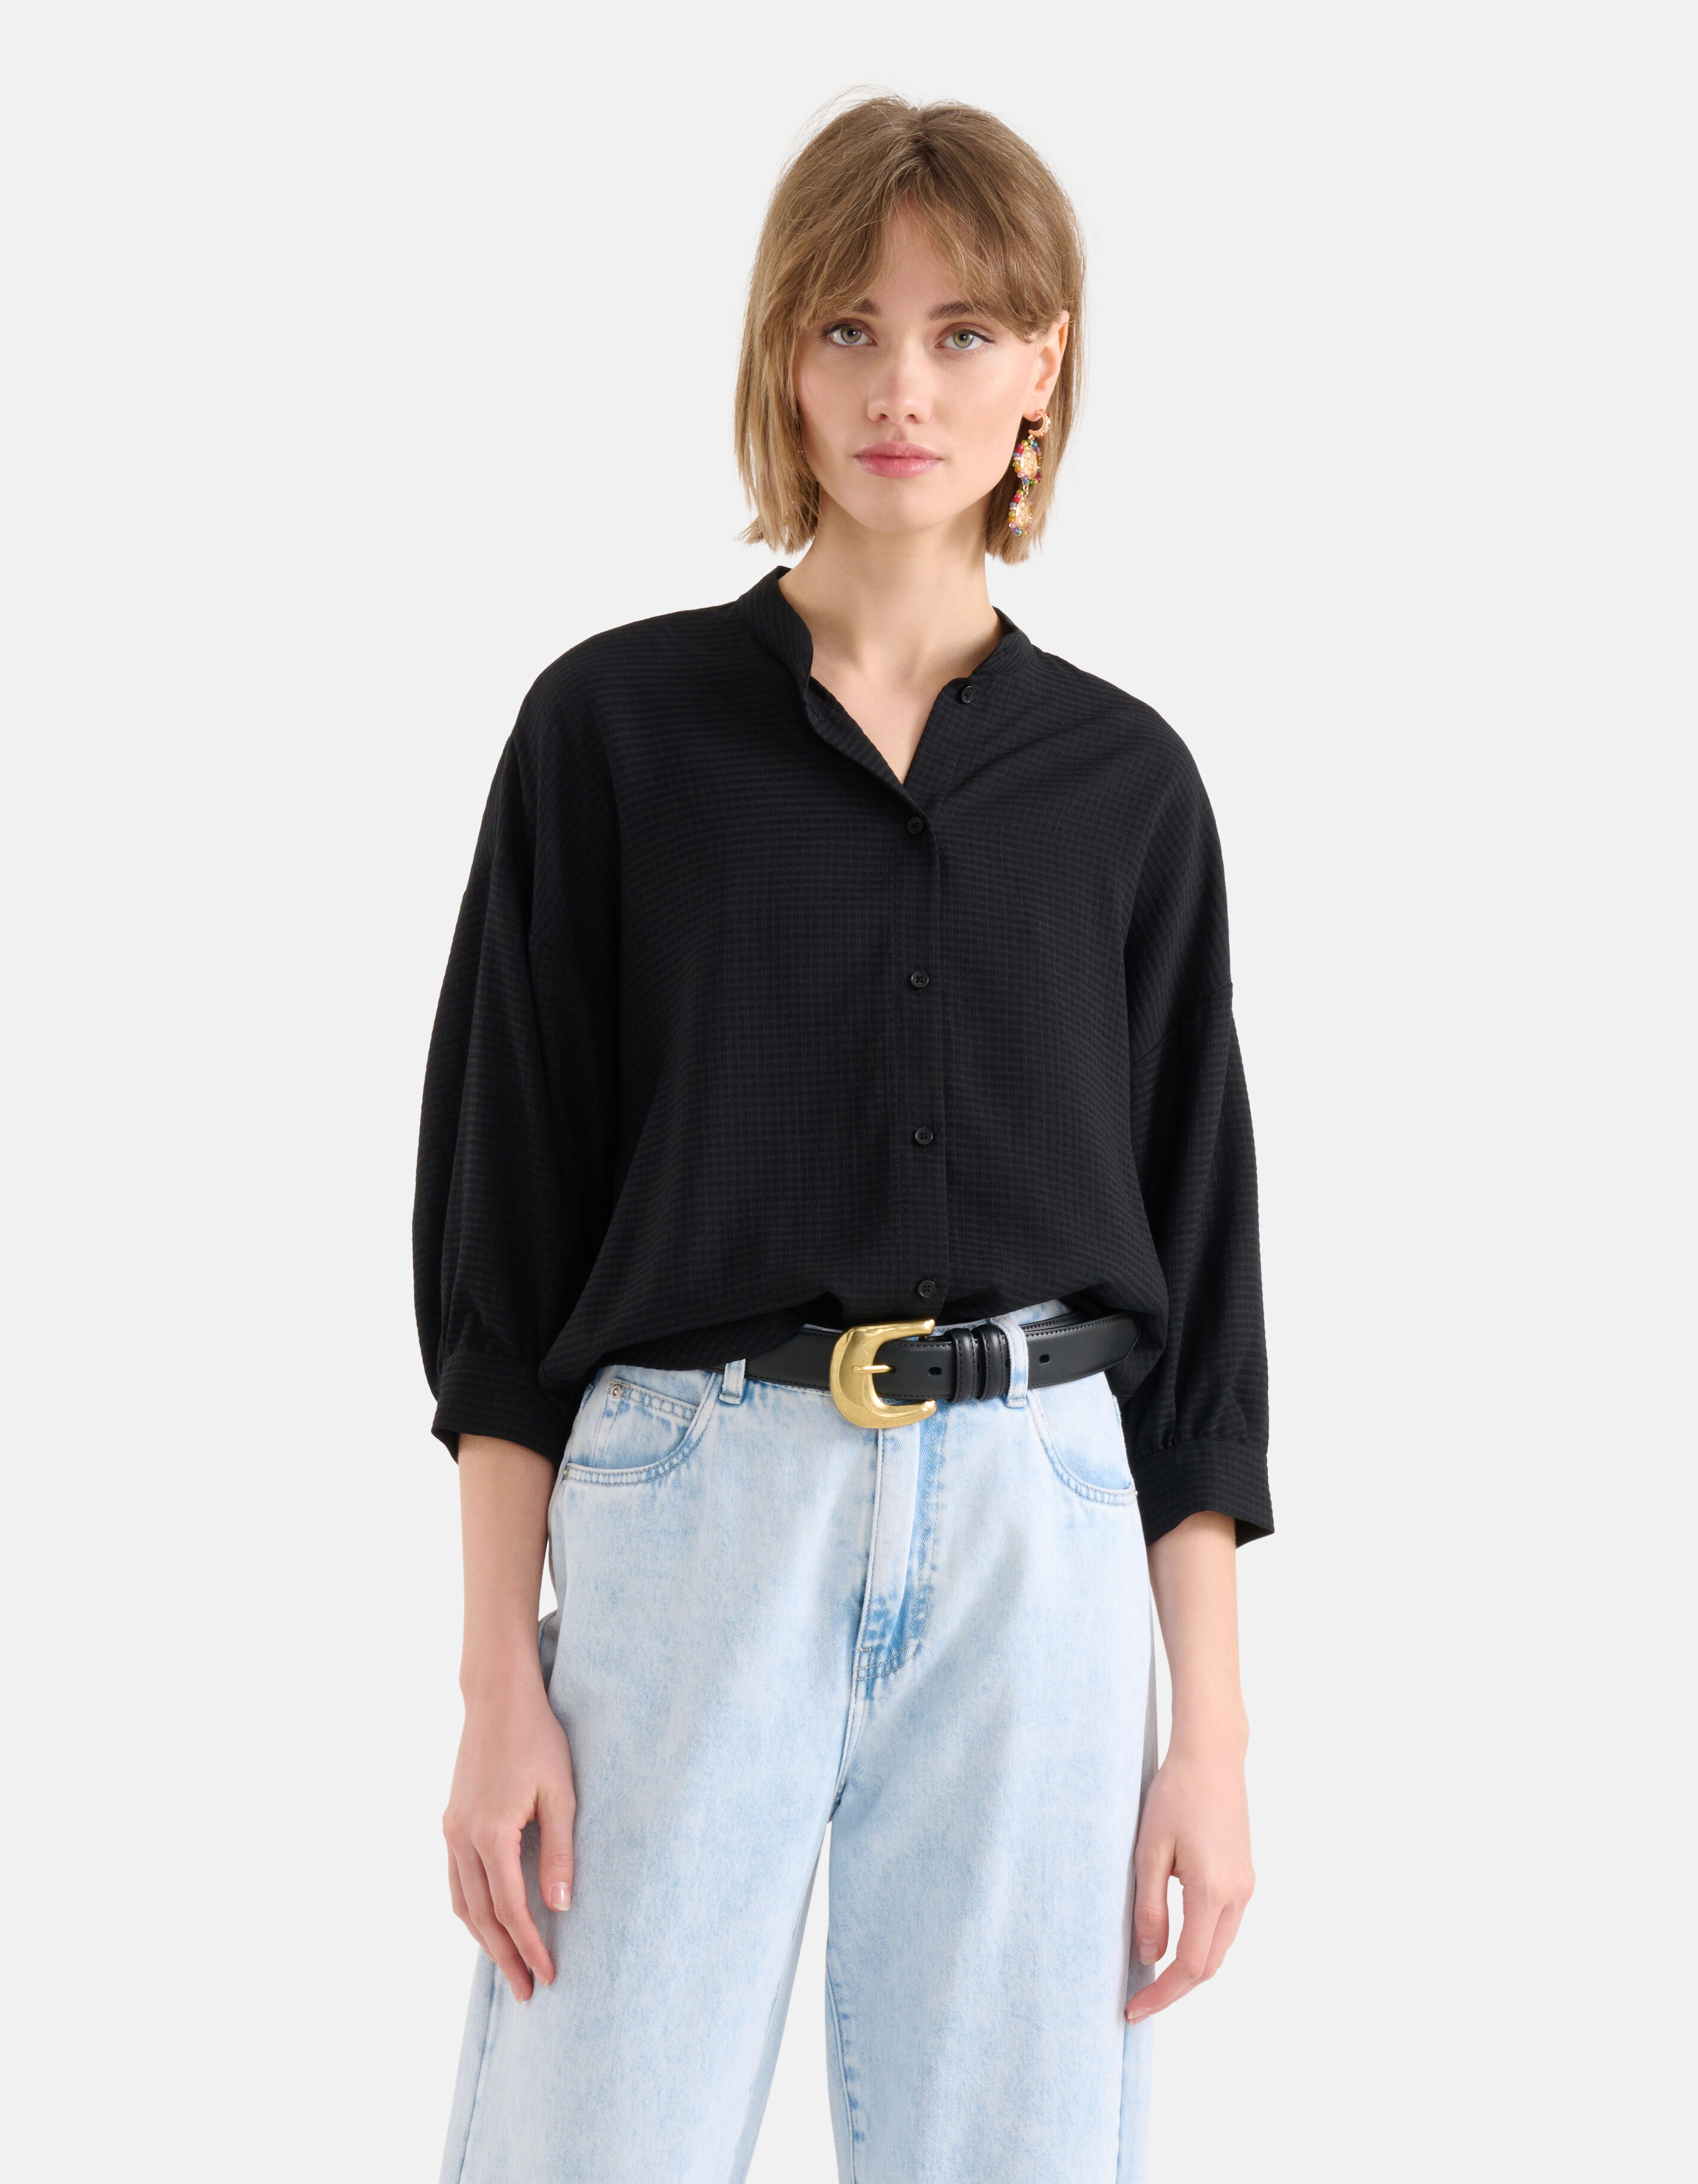 trog Kilometers zoon Zwarte blouses online kopen. Ontdek nu de collectie | Shoeby | Koop nu  online | Shoeby